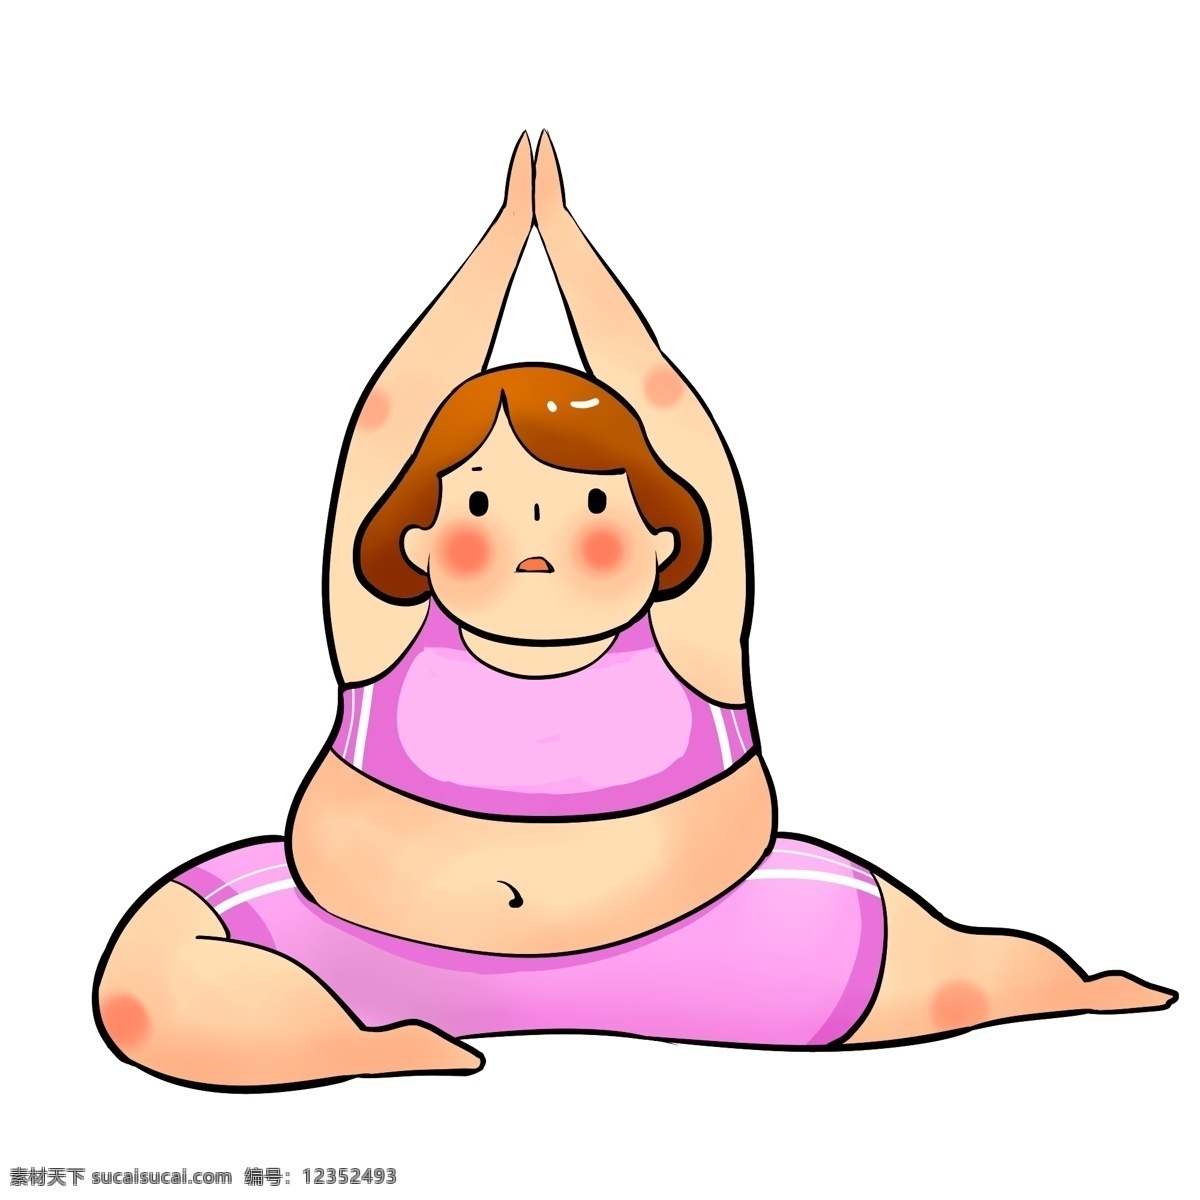 做 瑜伽 胖 女孩 可爱 卡通 减肥 元素 运动 胖女孩 肥胖